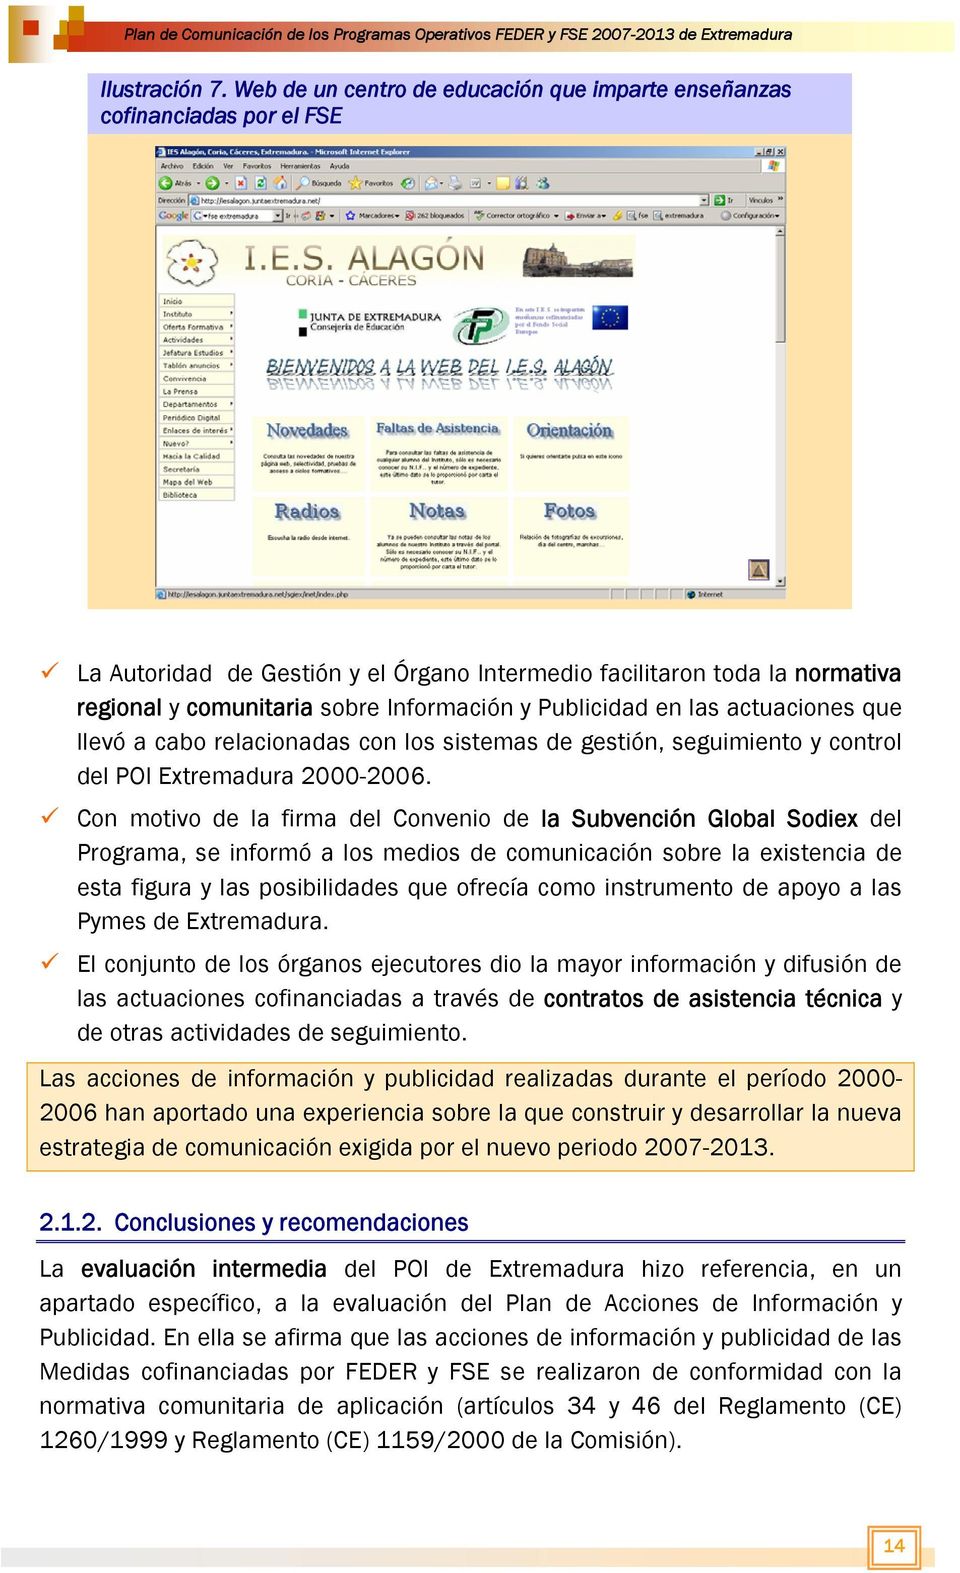 Publicidad en las actuaciones que llevó a cabo relacionadas con los sistemas de gestión, seguimiento y control del POI Extremadura 2000-2006.